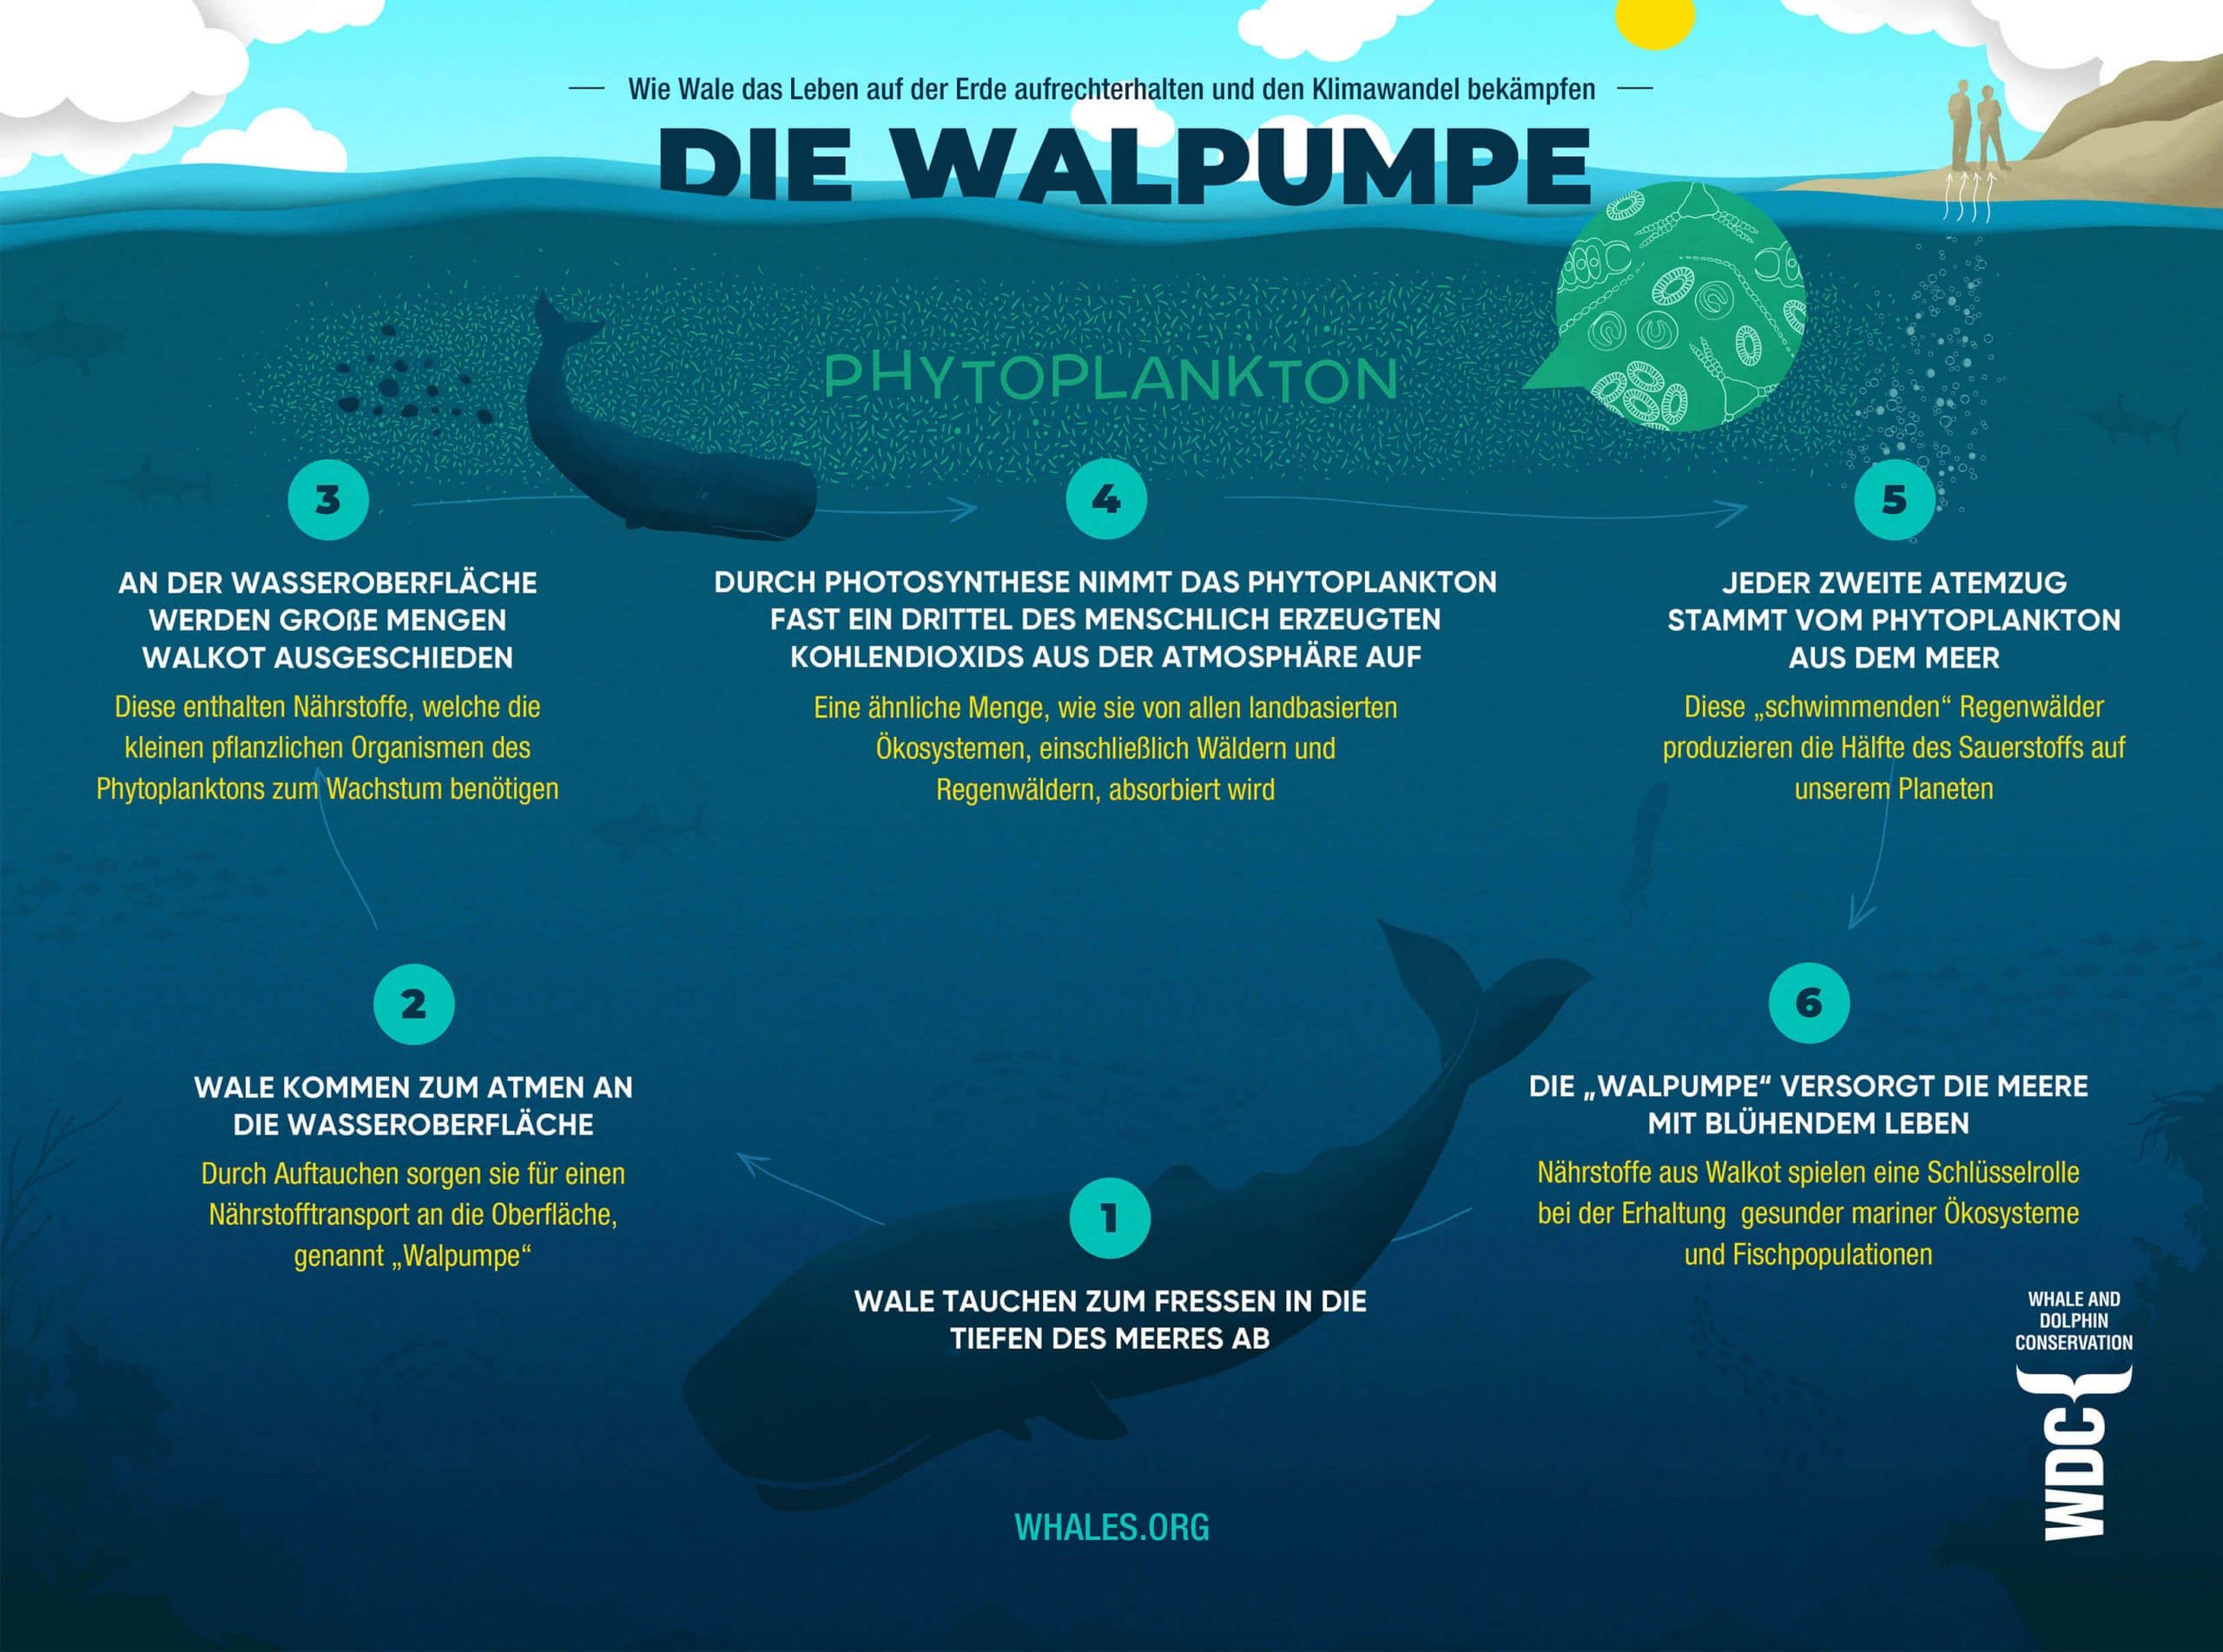 Der Kot von Walen dient als Dünger für das Phytoplankton. Das sind kleinste Pflanzen in der oberen Meeresschicht, die der Atmosphäre Kohlenstoff entziehen und Sauerstoff produzieren.